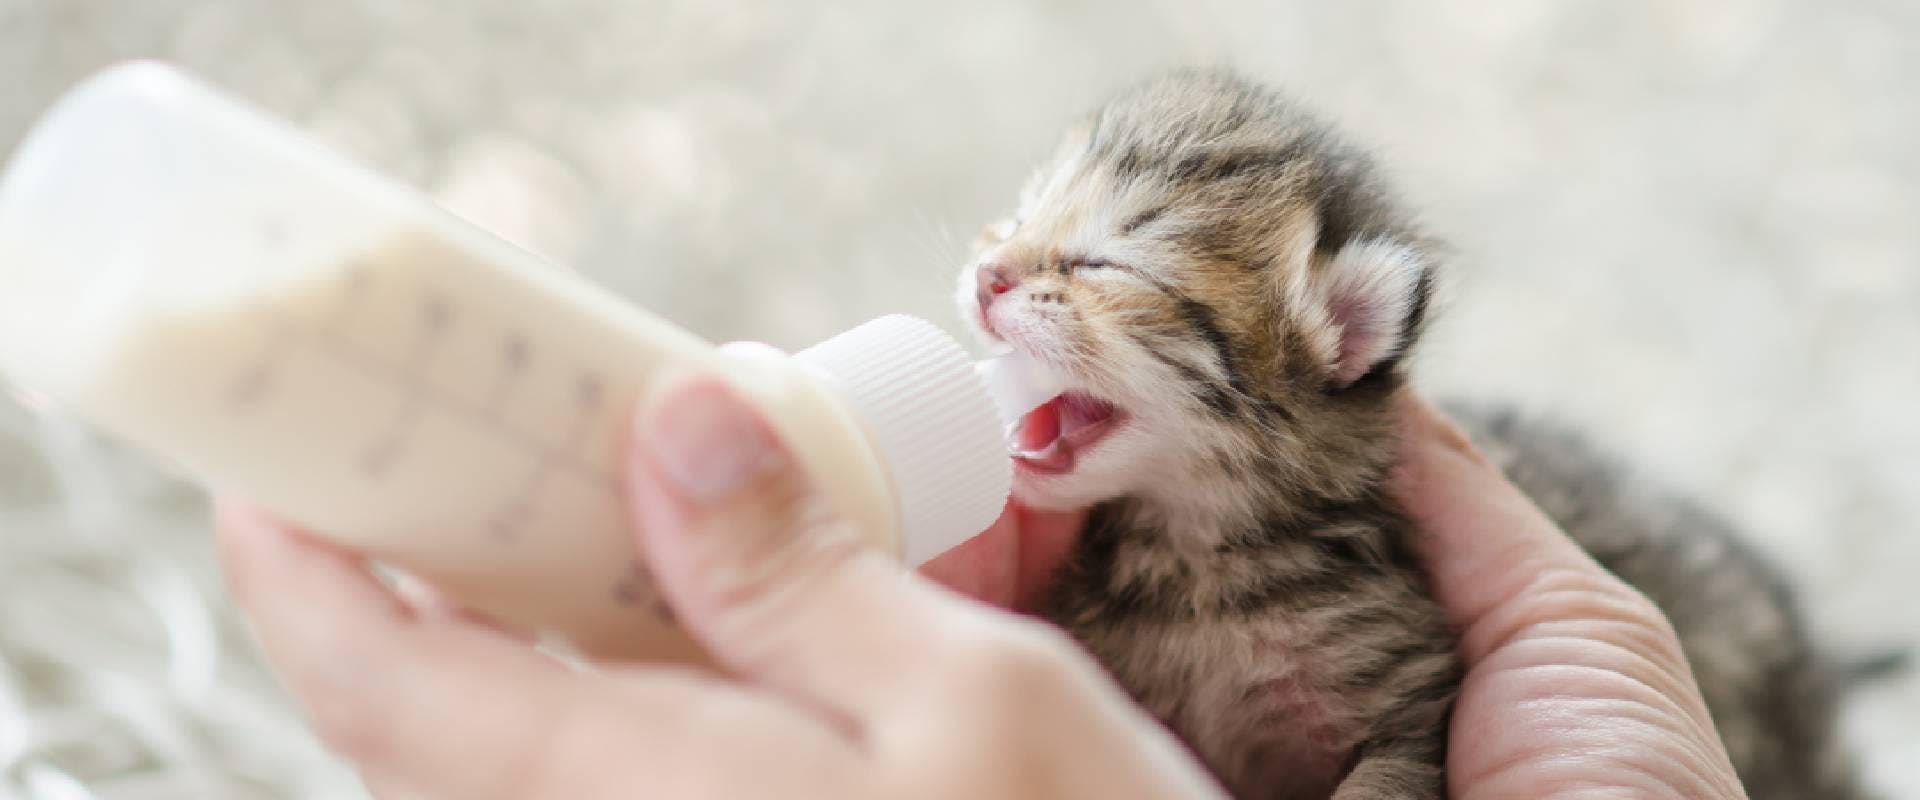 Kitten drinking milk from a bottle